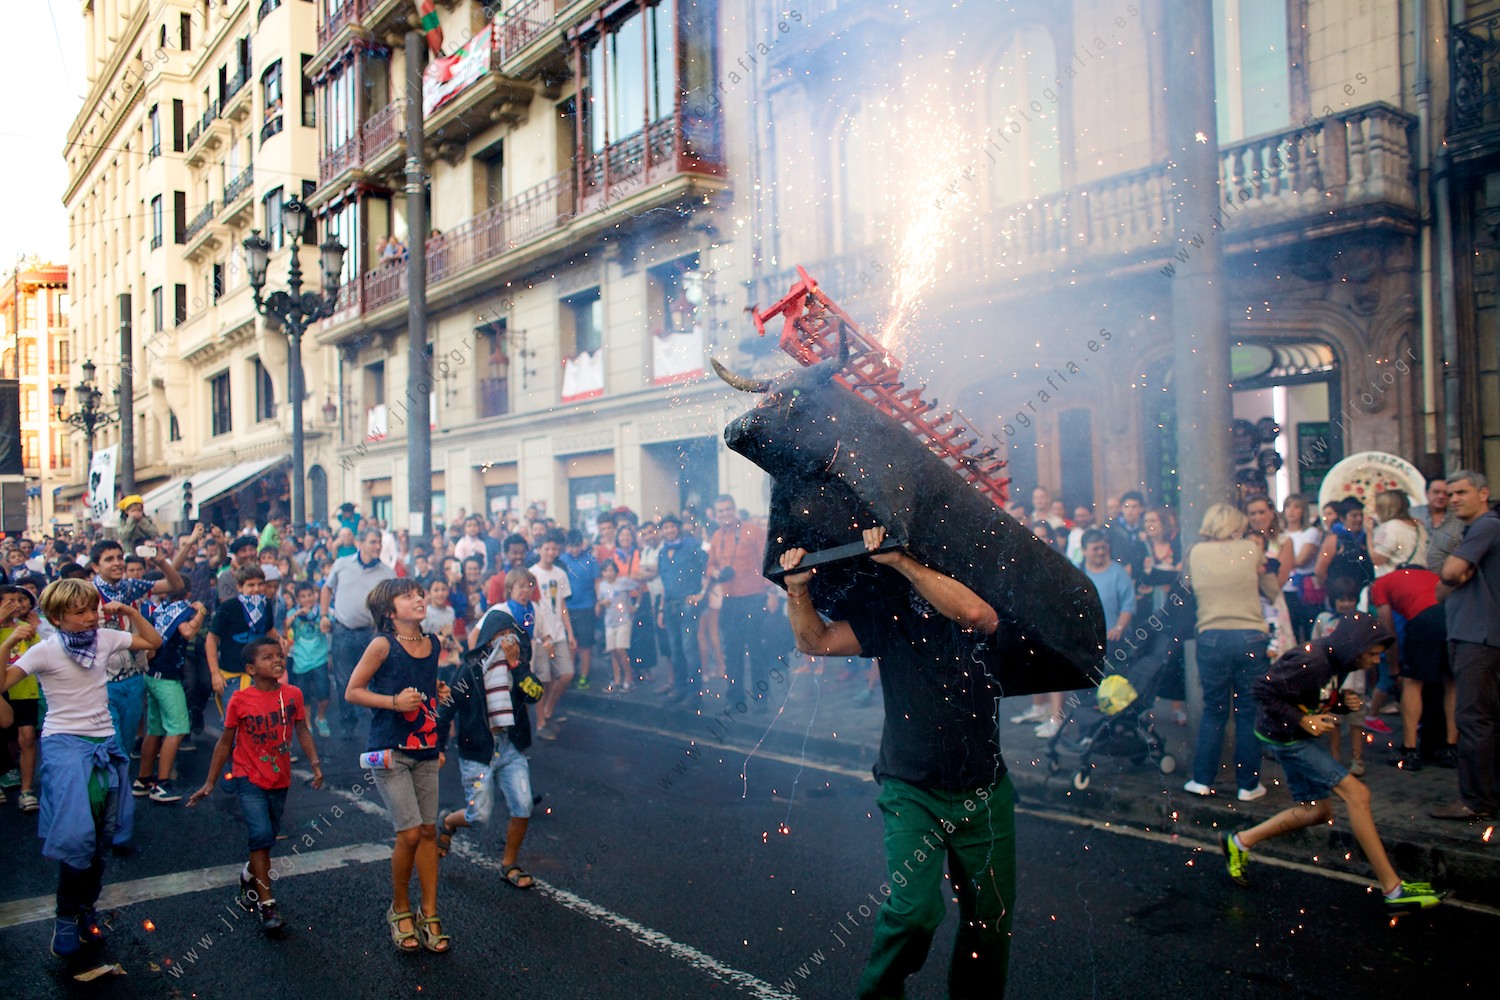 Aste Nagusia de Bilbao, toro de fuego en el Arenal, junto al Boulevard con la participación de muchos niños